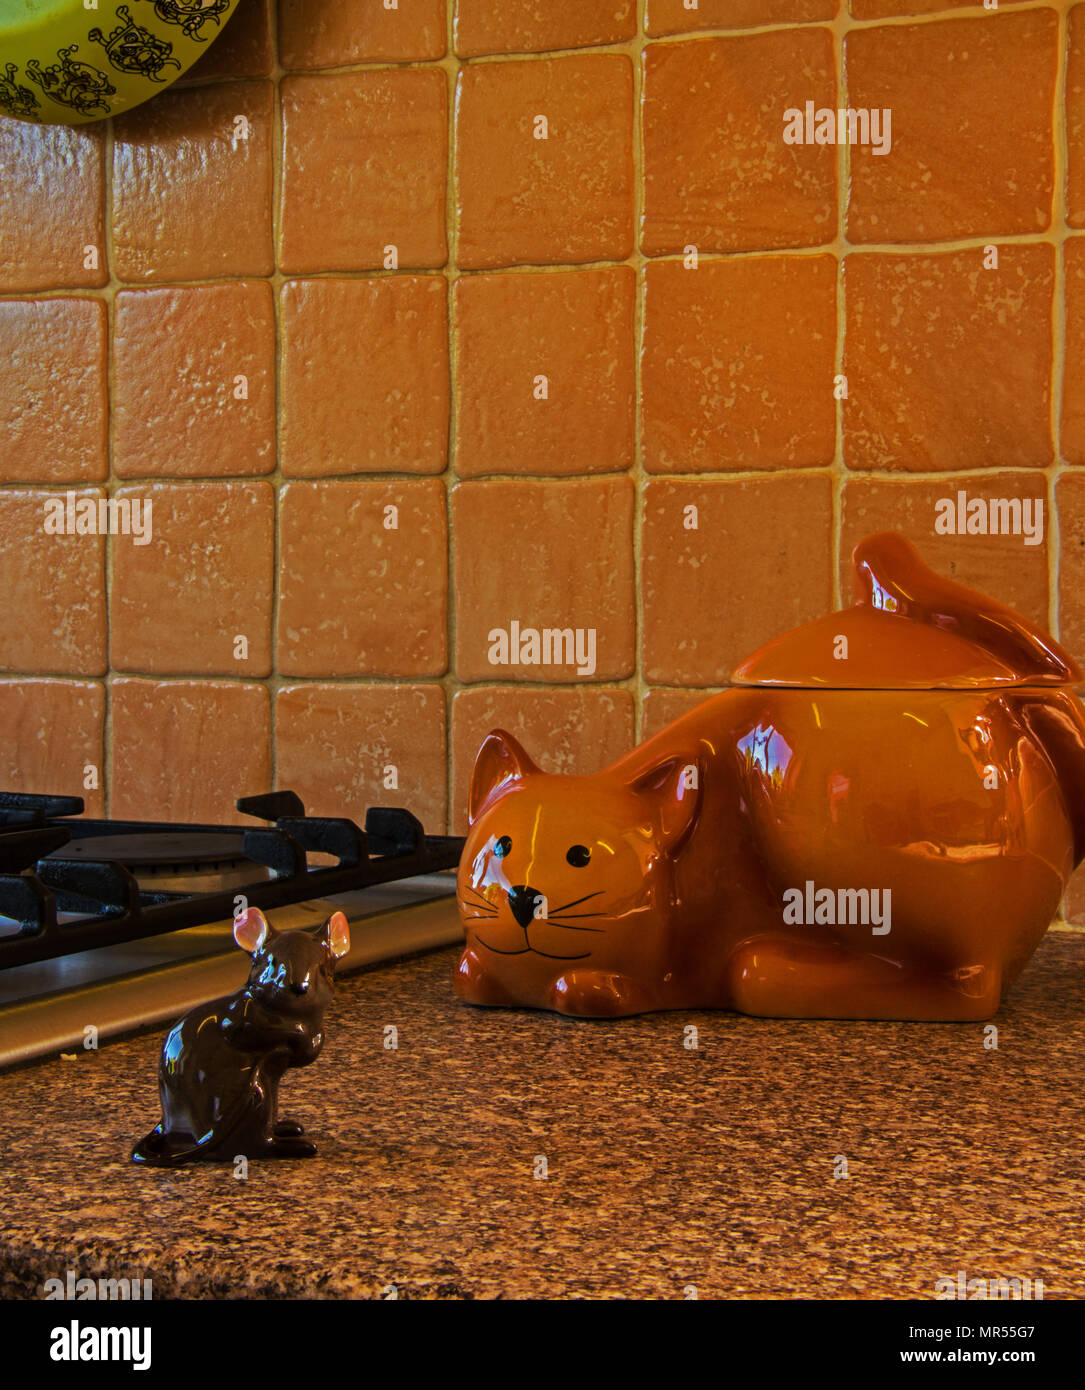 Gatto in ceramica & mouse in cucina Foto Stock